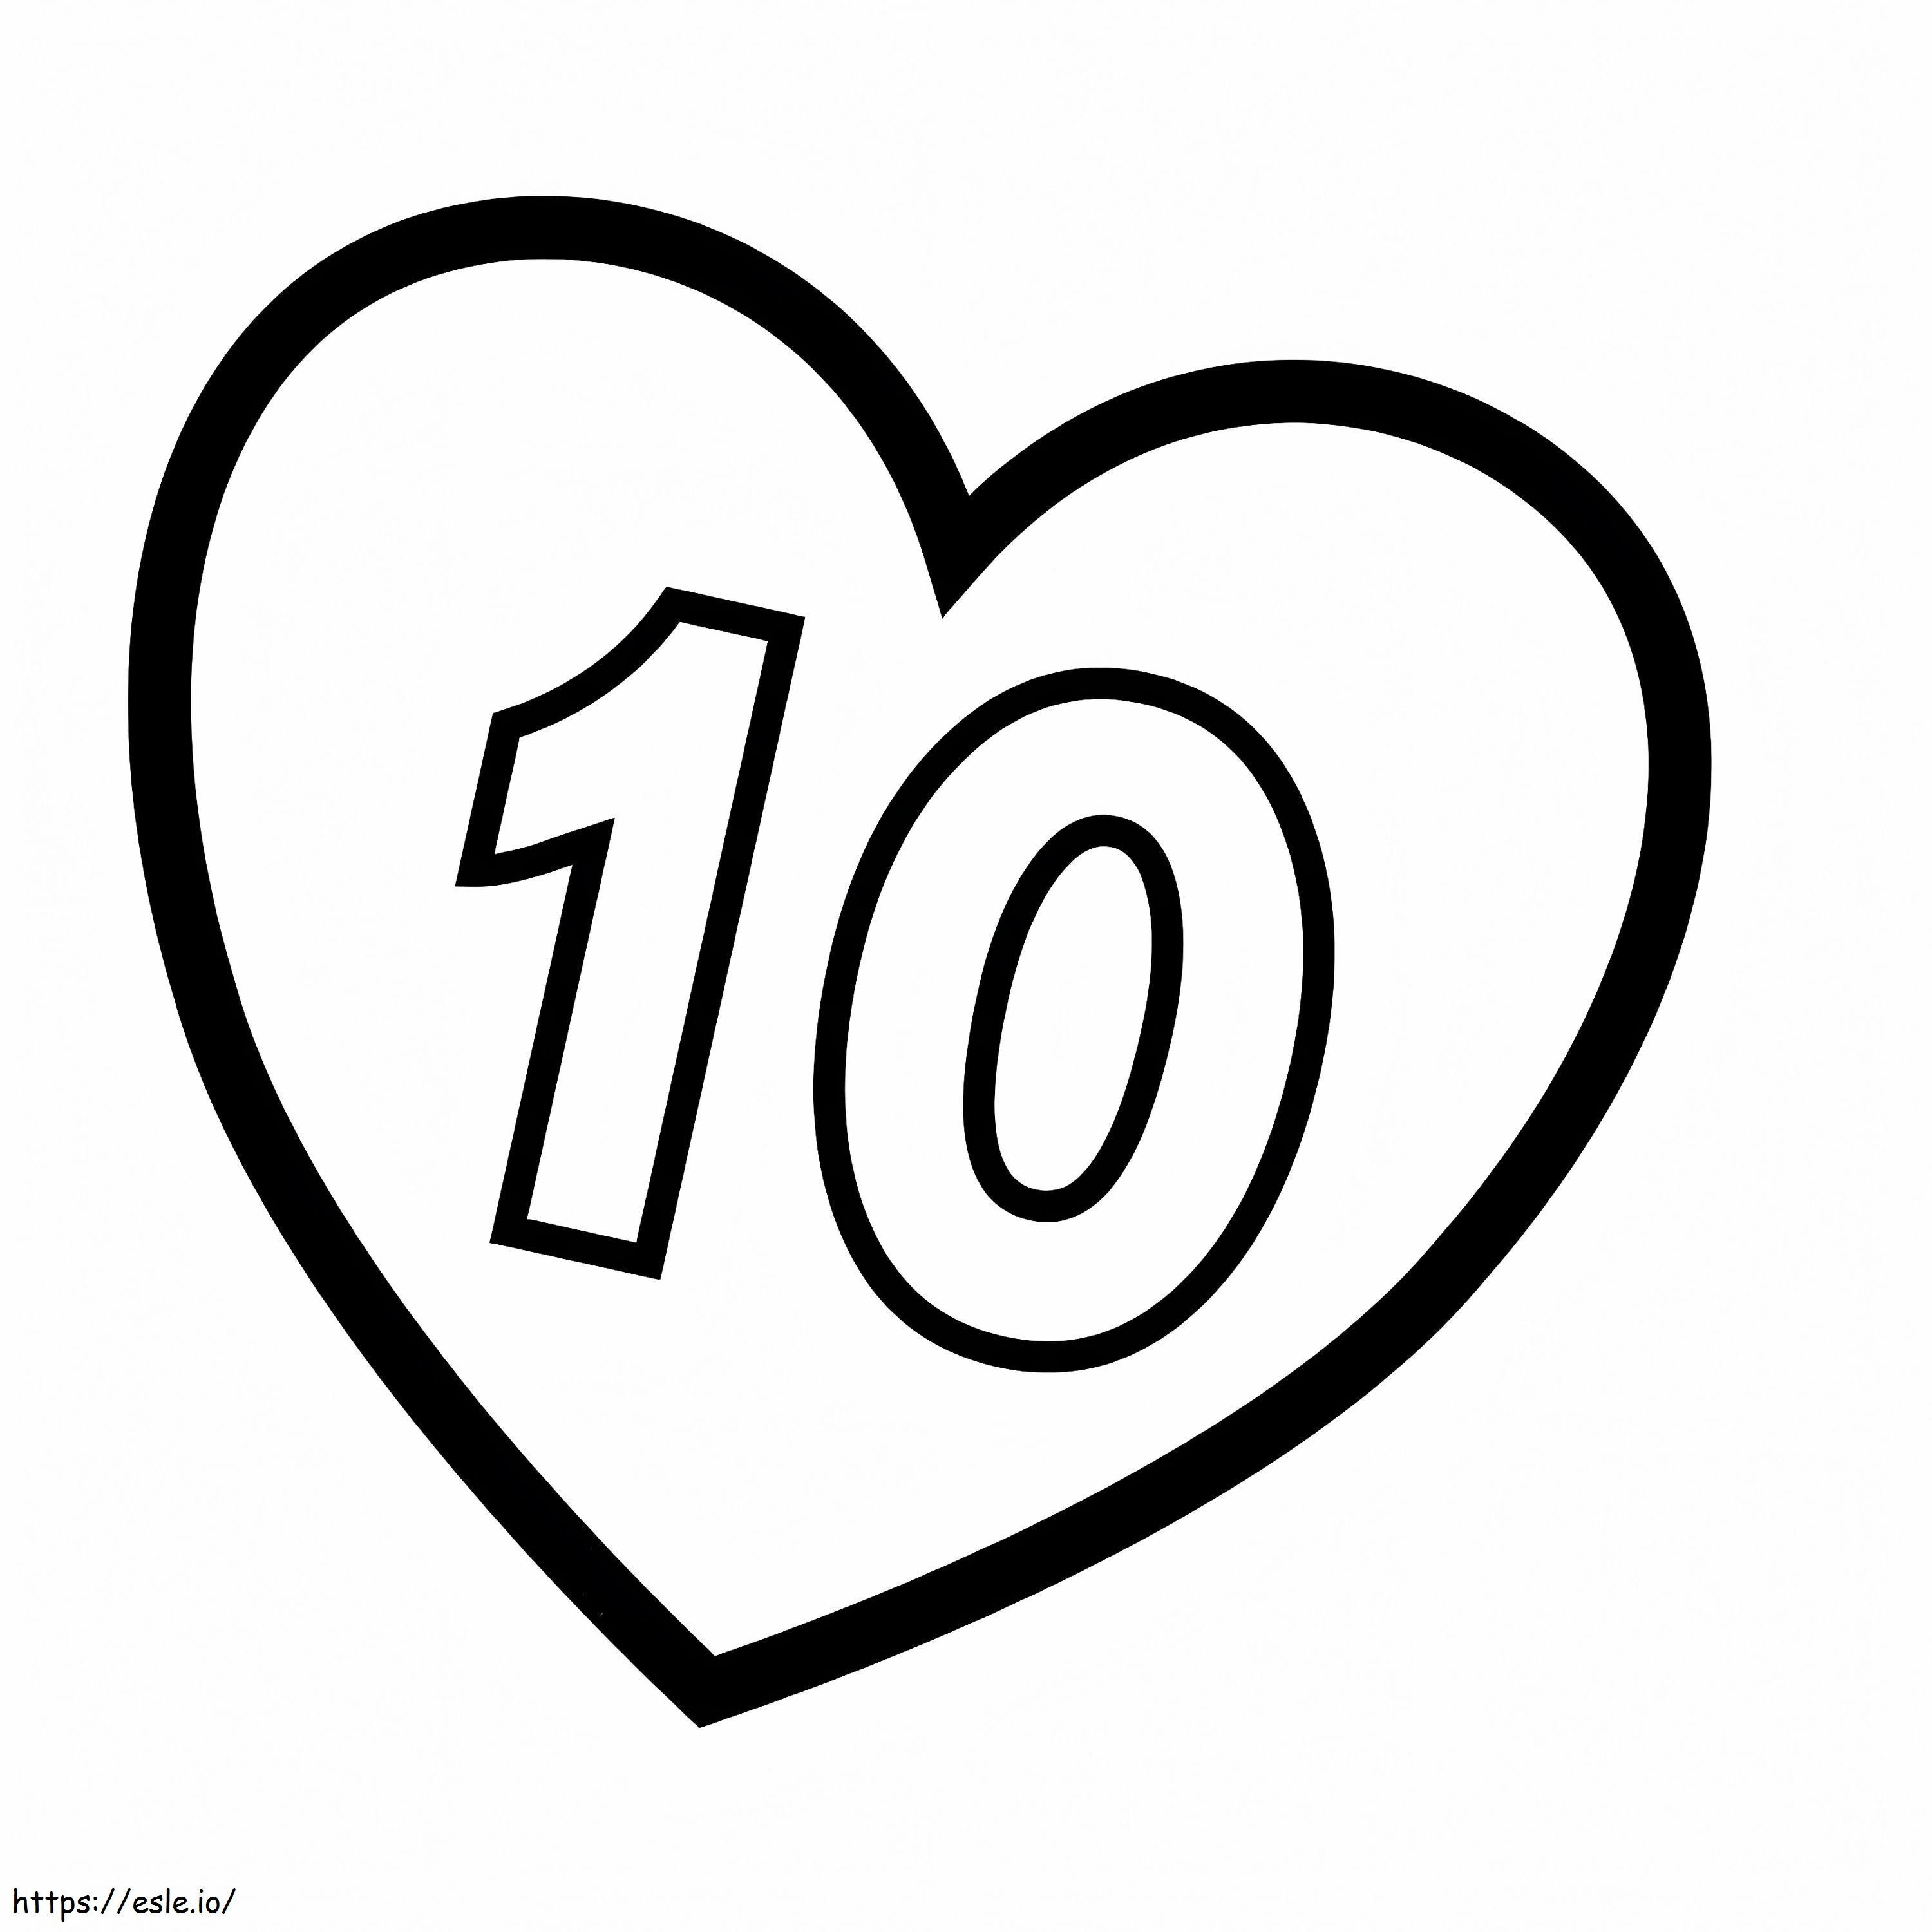 Nummer 10 im Herzen ausmalbilder